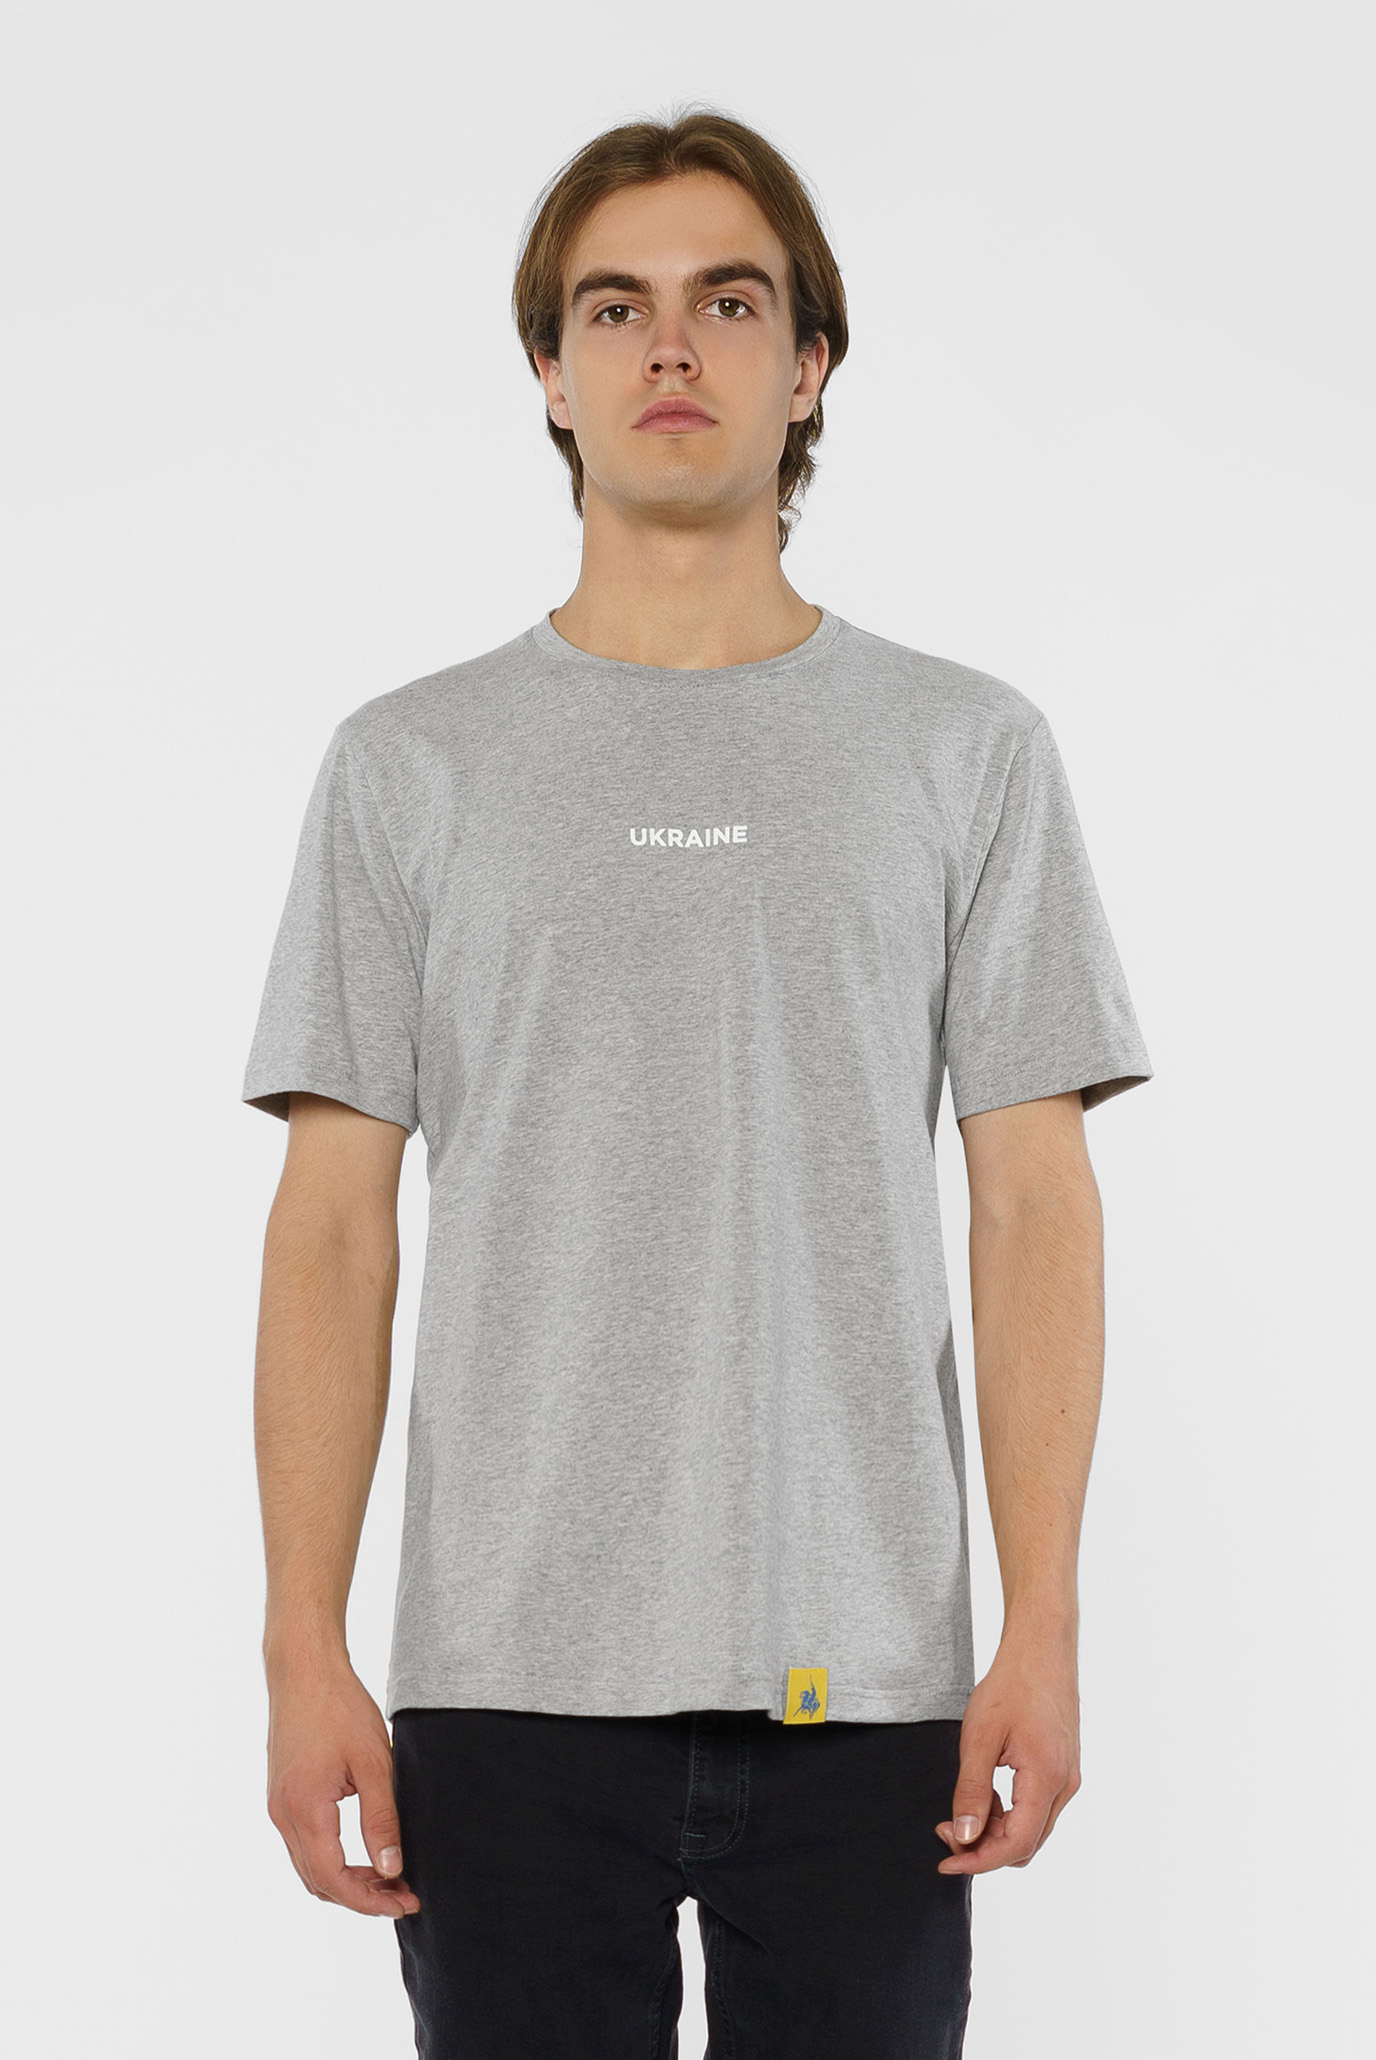 Сіра футболка (унісекс) 1